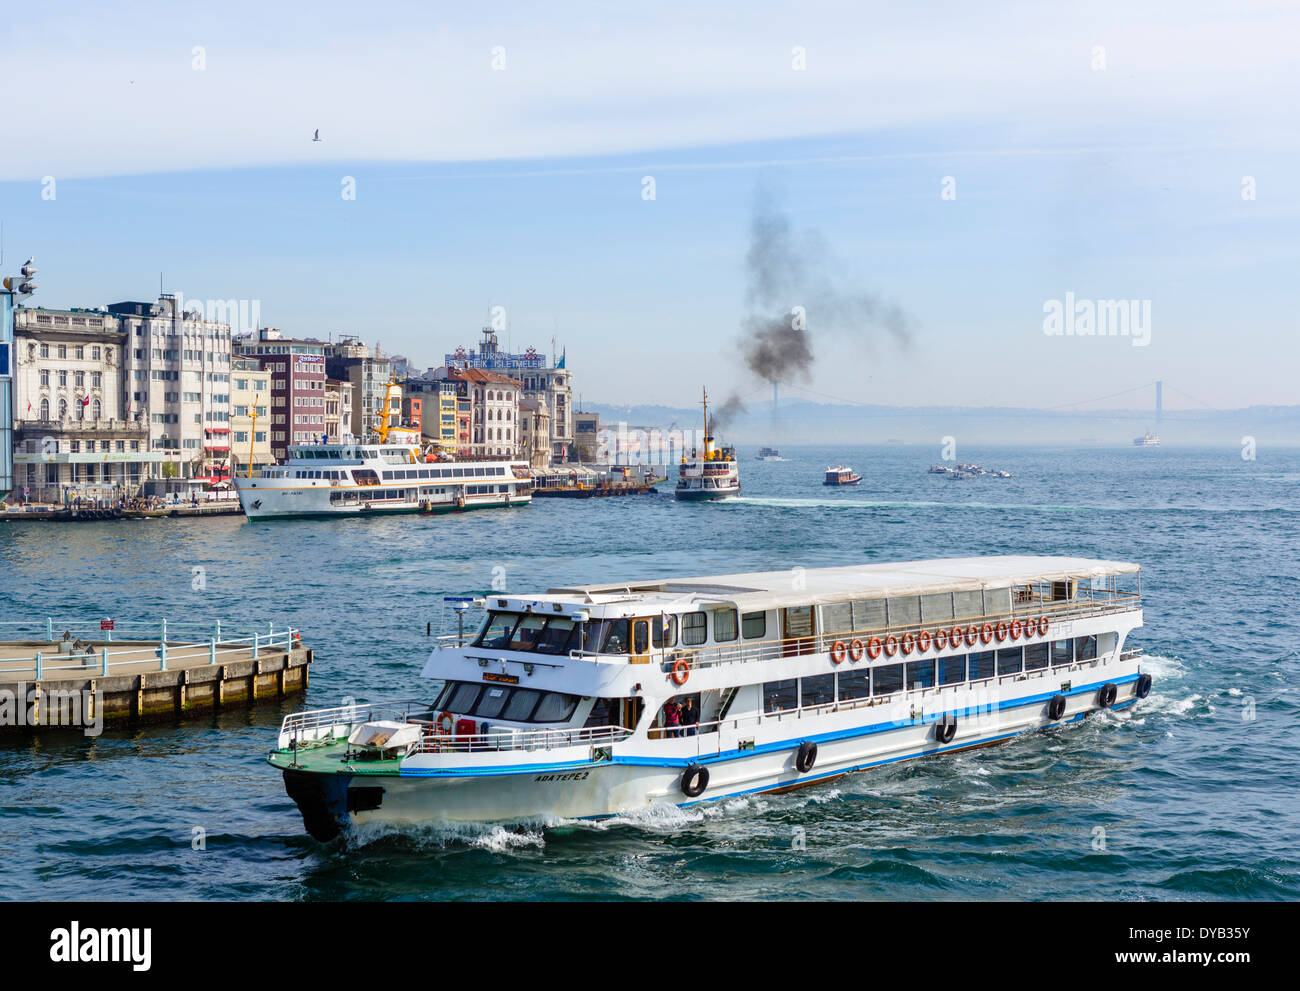 Vue depuis le pont de Galata de bateaux sur la Corne d'or à la recherche vers le Bosphore, Istanbul, Turquie Banque D'Images